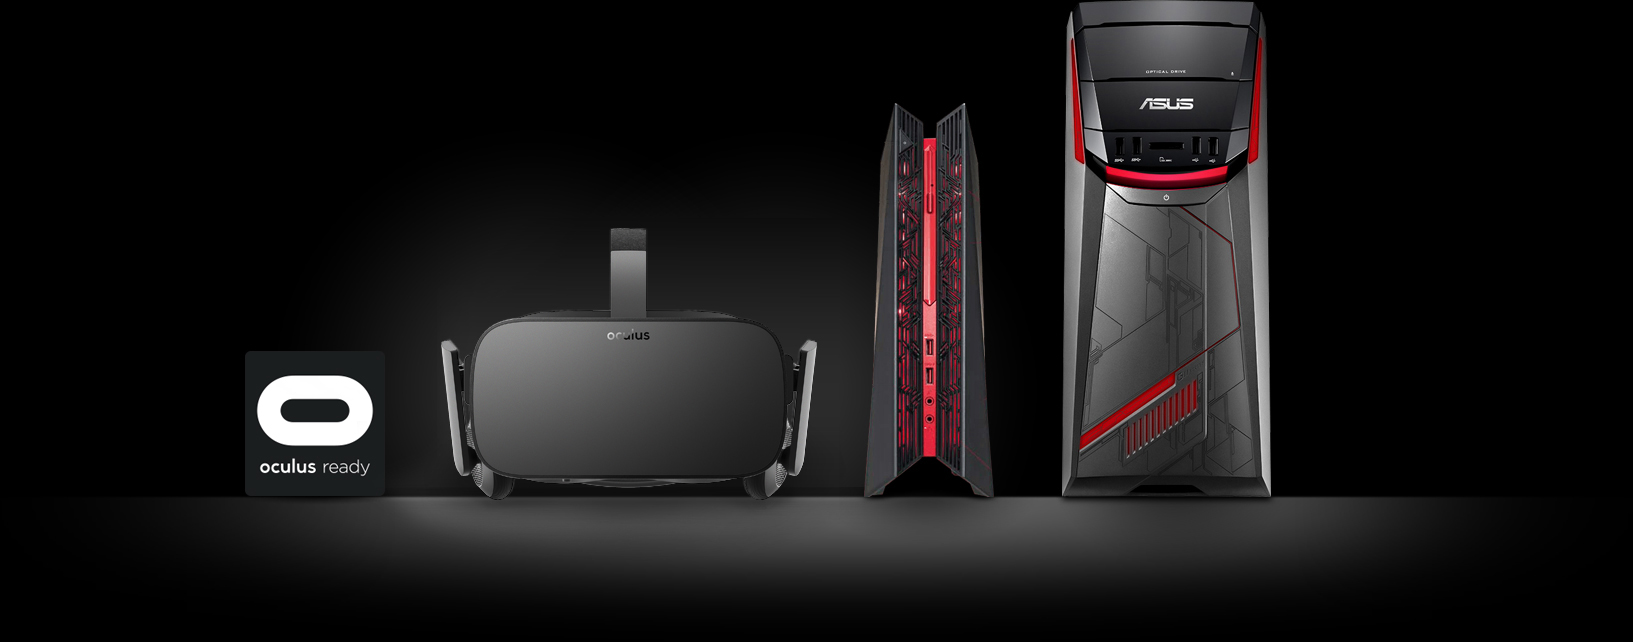 ASUS и Oculus объявили о сотрудничестве